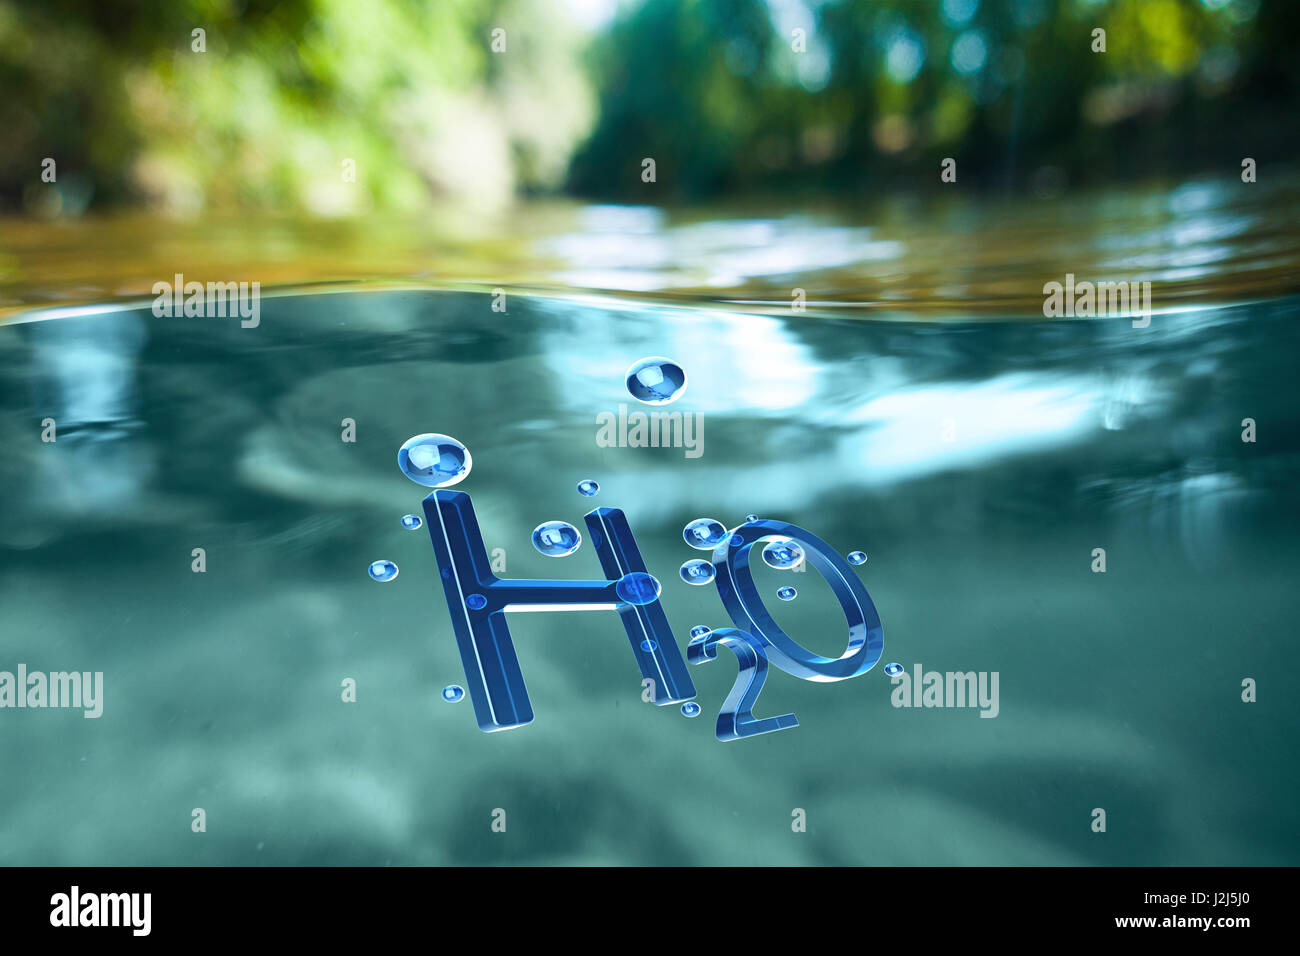 El símbolo químico del agua, H2O. Foto de stock